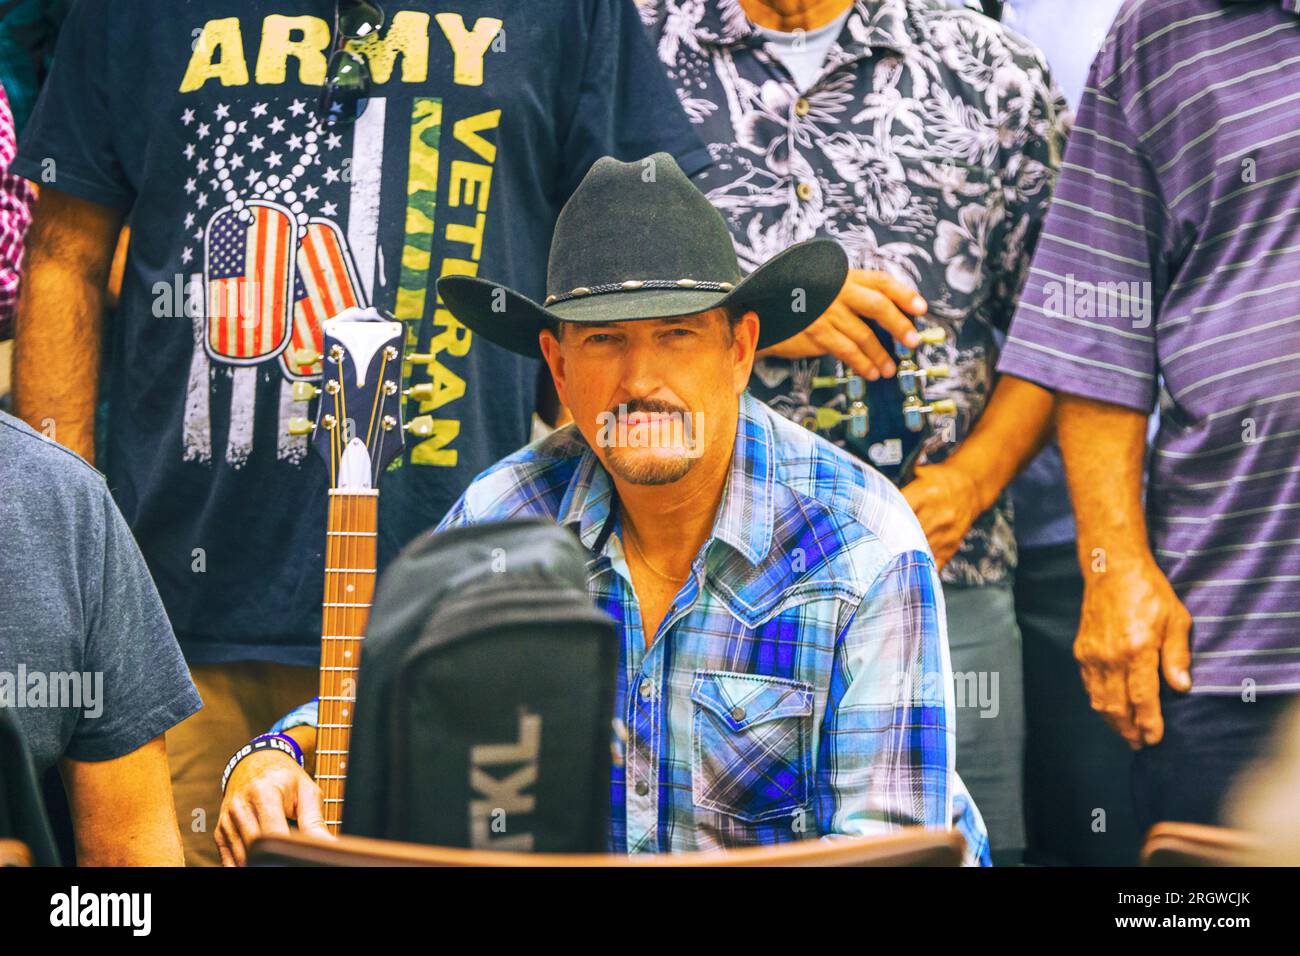 Image de l'ambassadeur Brent Payne, artiste de musique country et guitares pour vétérans, lors de l'événement spécial de remise des diplômes qui s'est tenu à la clinique Loma Linda va Banque D'Images